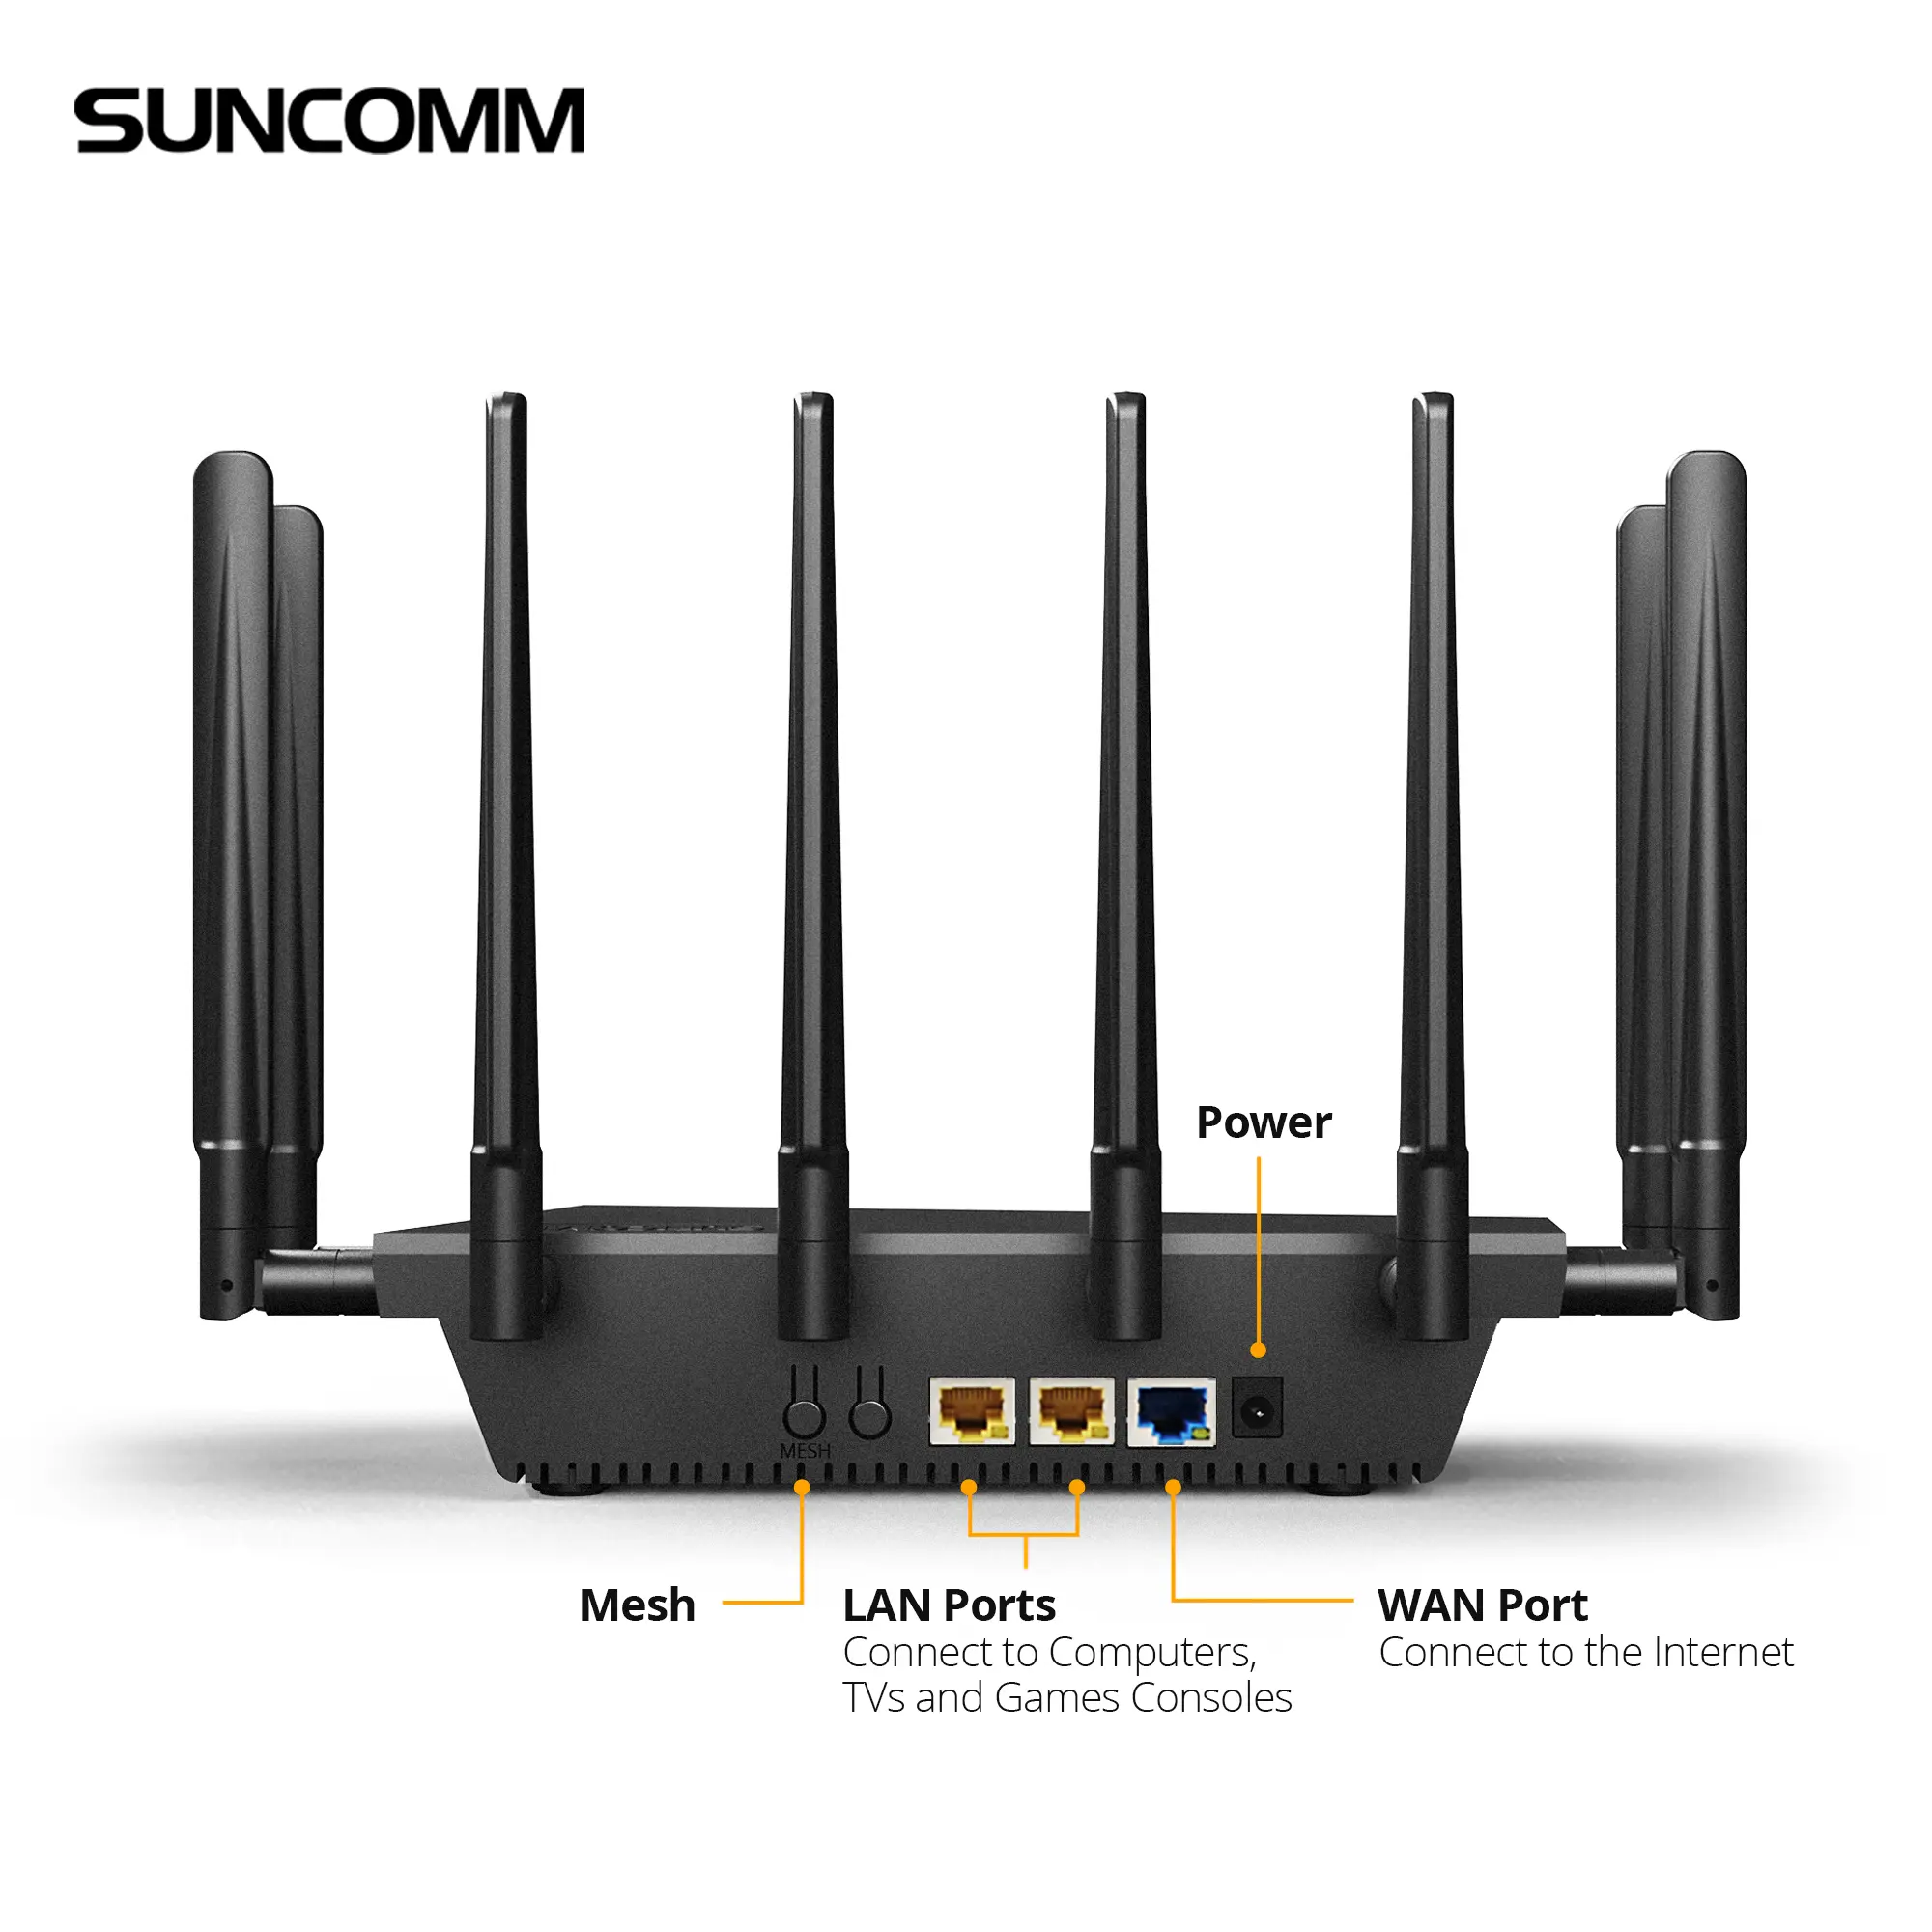 SUNCOMM SE06 nouveau routeur WiFi sans fil 5G antenne externe accès Internet à haut débit 2.4G 5.8G 5G routeur avec emplacement pour carte sim